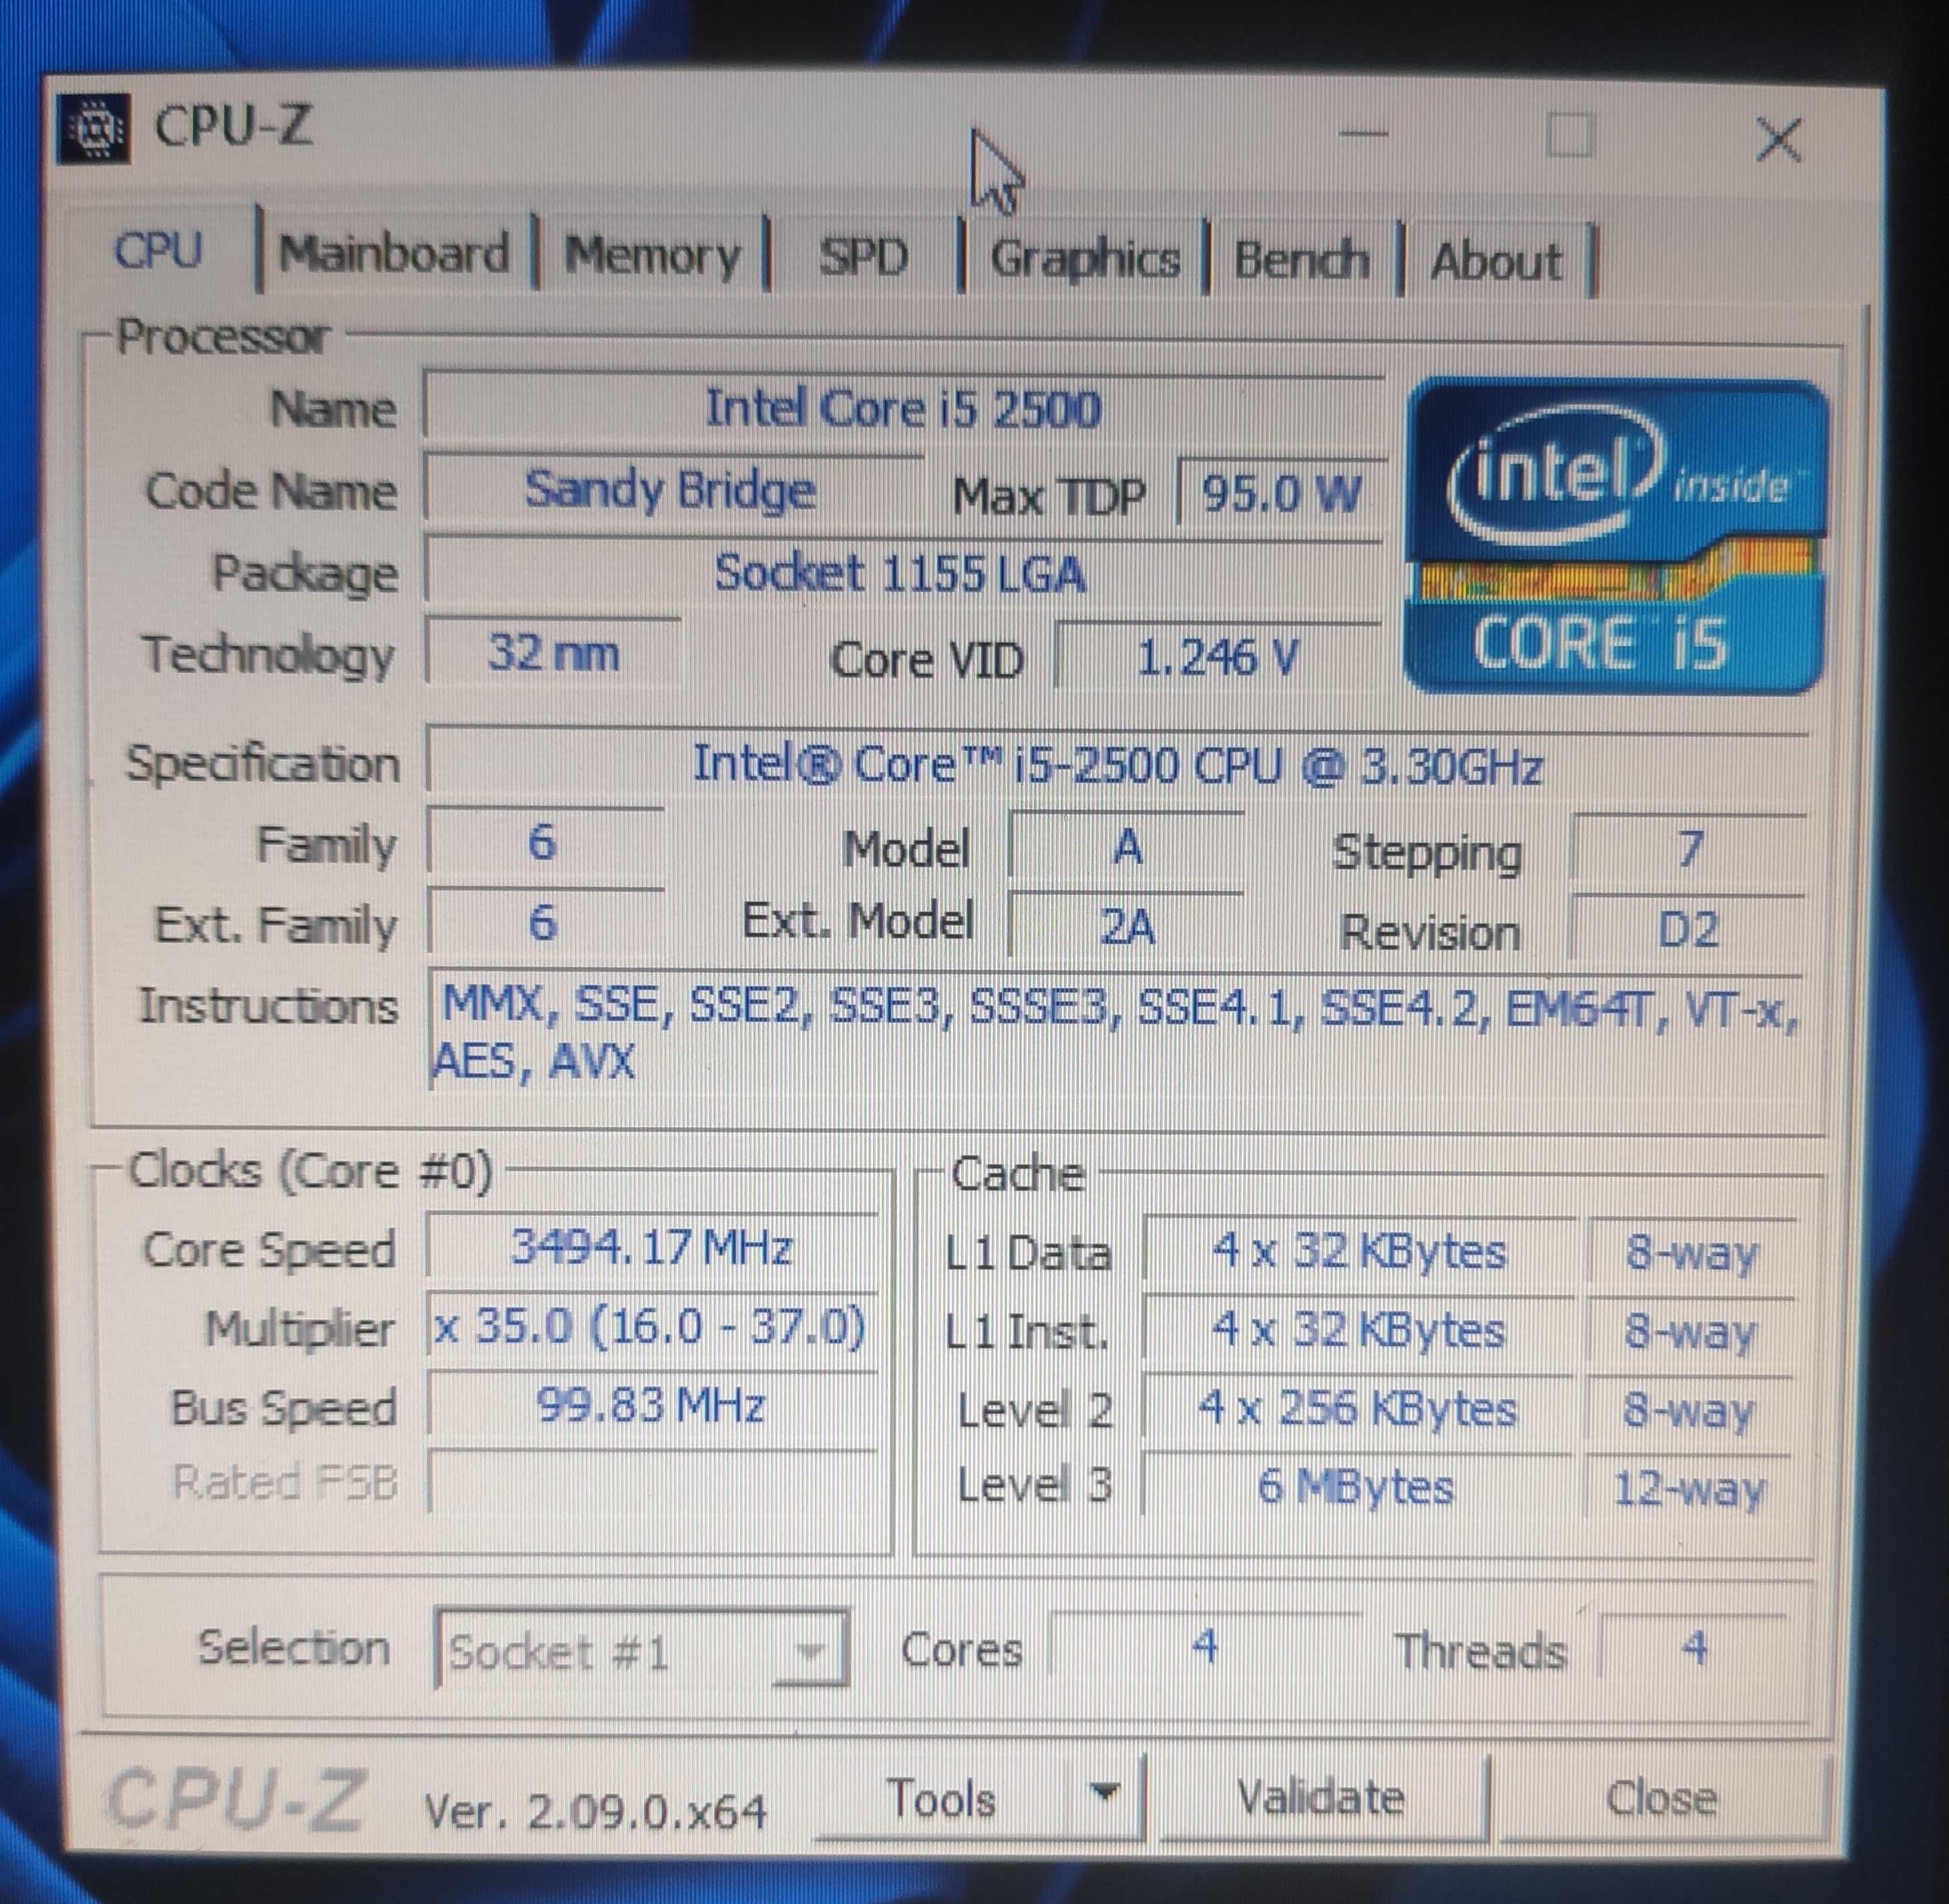 core i5-2500 + 128gb ssd + 8gb ddr3 => Dell Inspiron 620